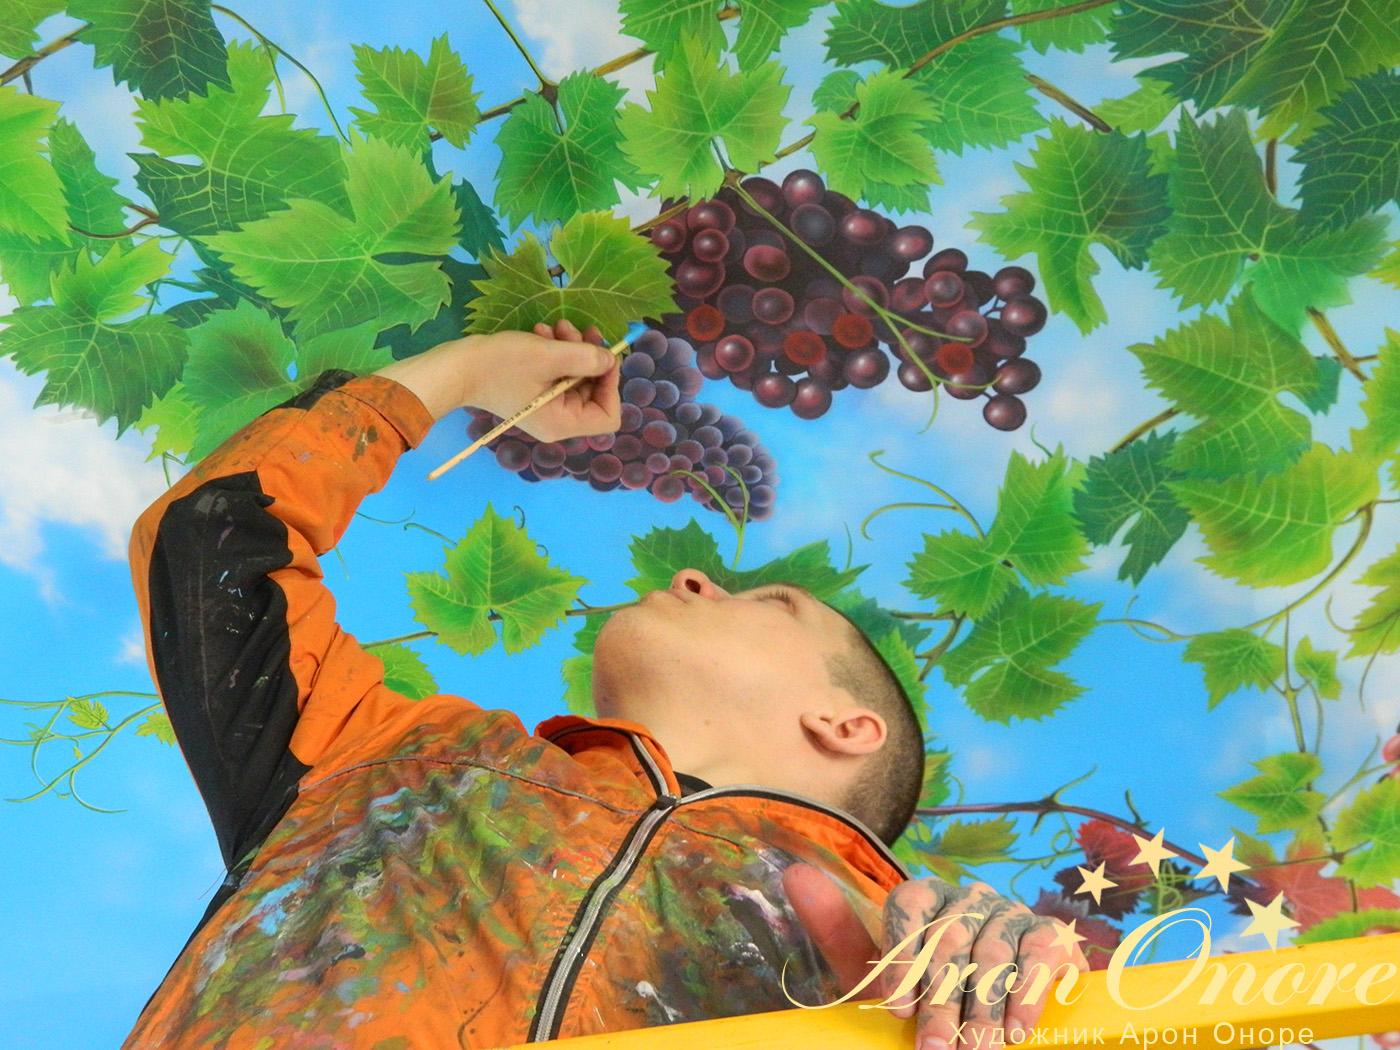 Художник аэрограф создает рисунок на потолке – виноградная лоза на фоне синего неба